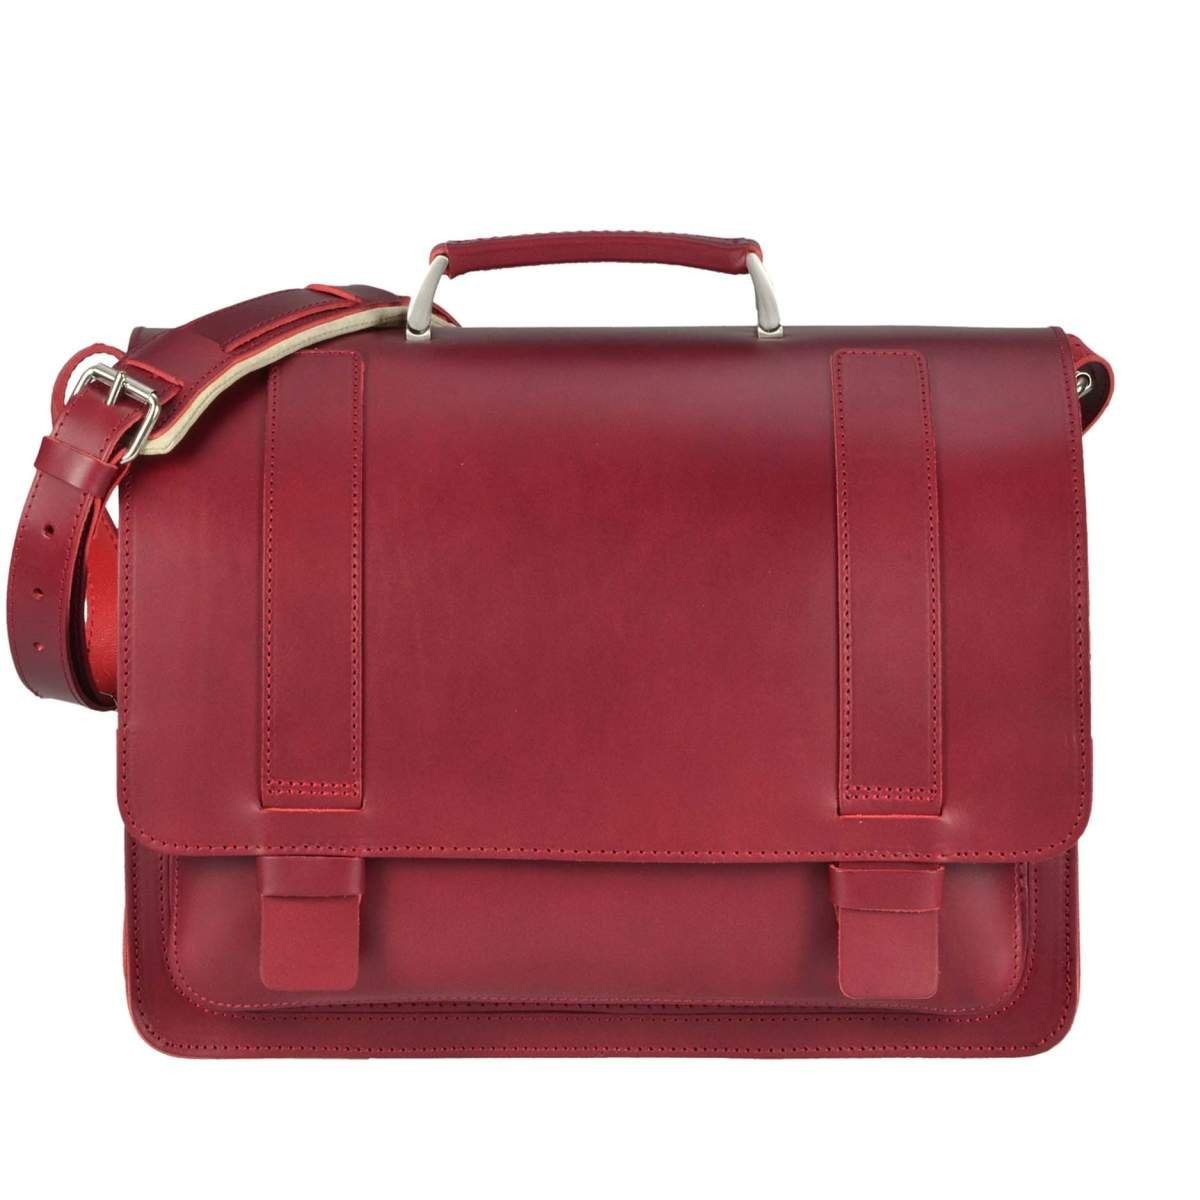 Ruitertassen Aktentasche Classic, 40 cm Lehrertasche mit 2 Fächern, Schultasche, dickes rustikales Leder rot | Aktentaschen